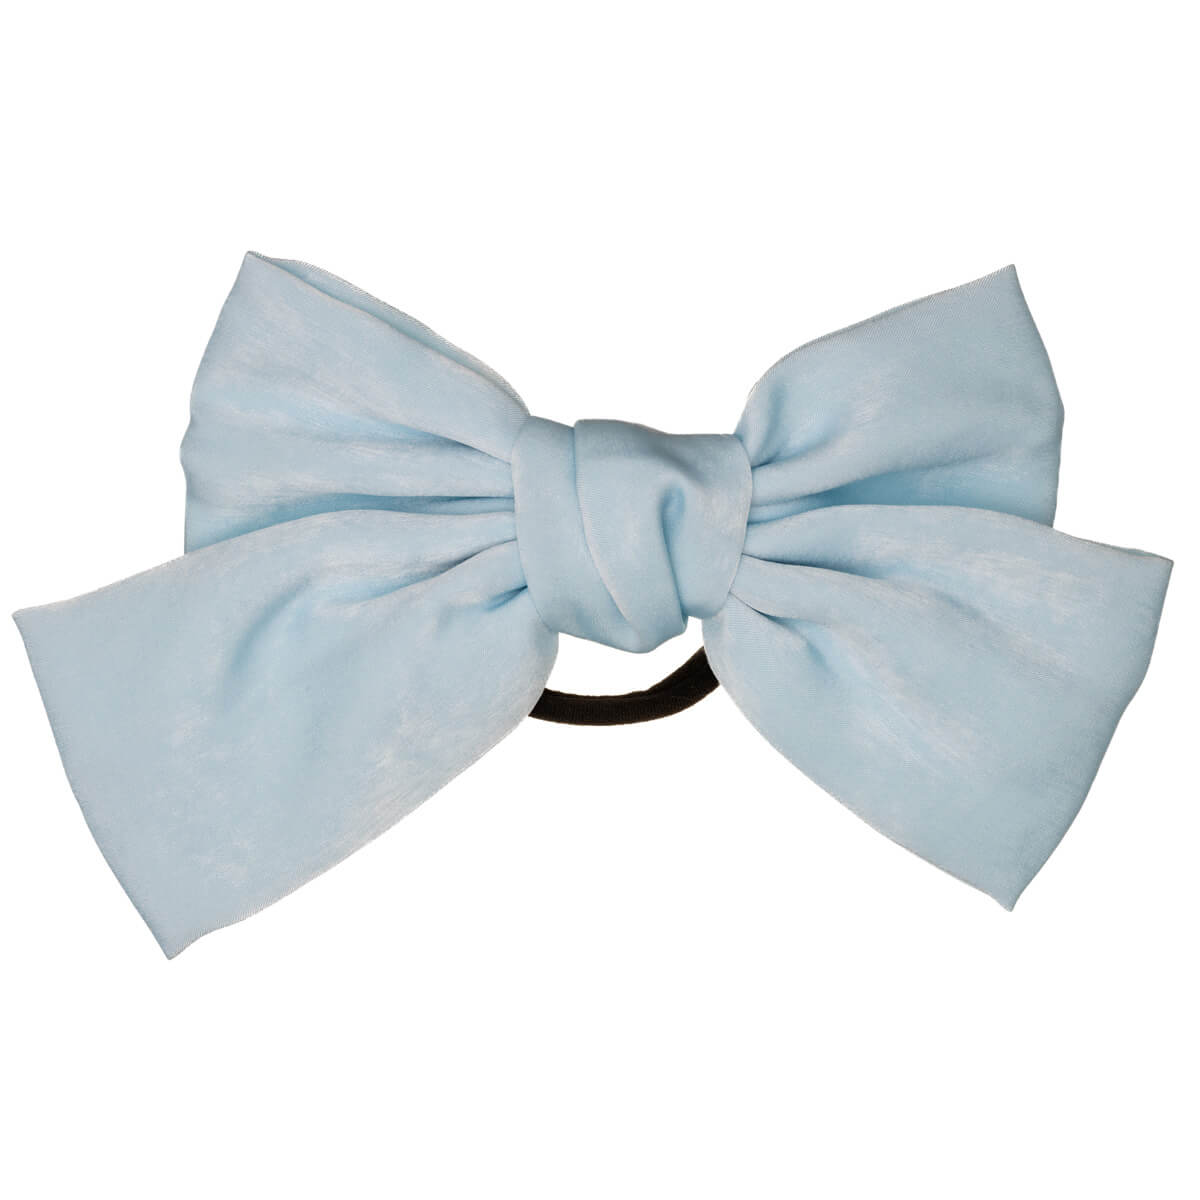 Monochrome hair bow tie hair bow 22cm